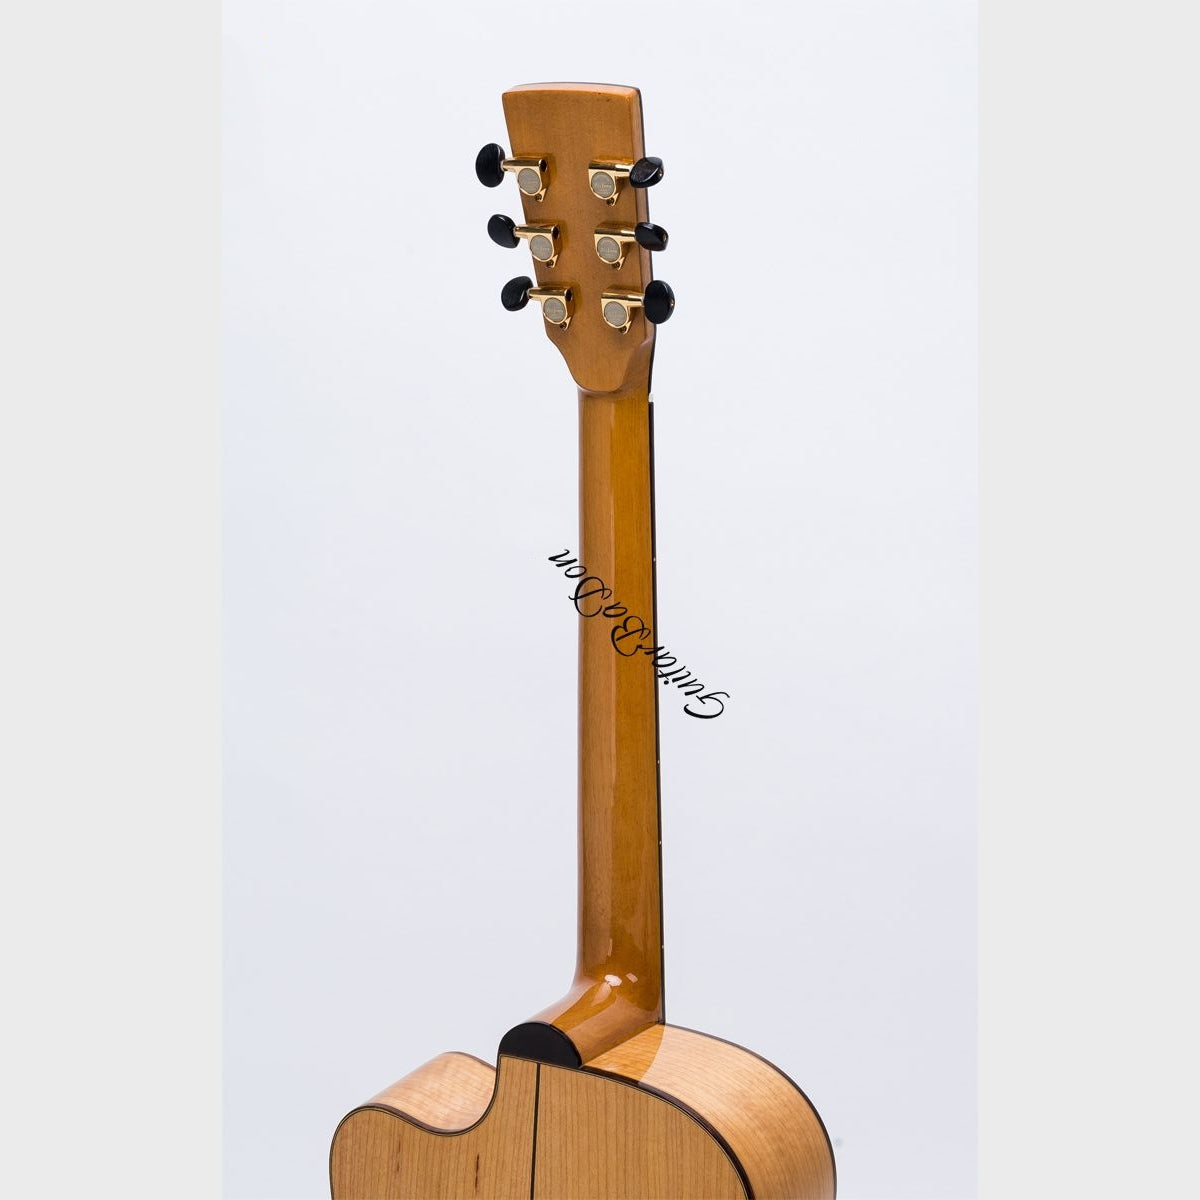 Đàn Guitar Ba Đờn J550C Acoustic, Gỗ Còng - Việt Music